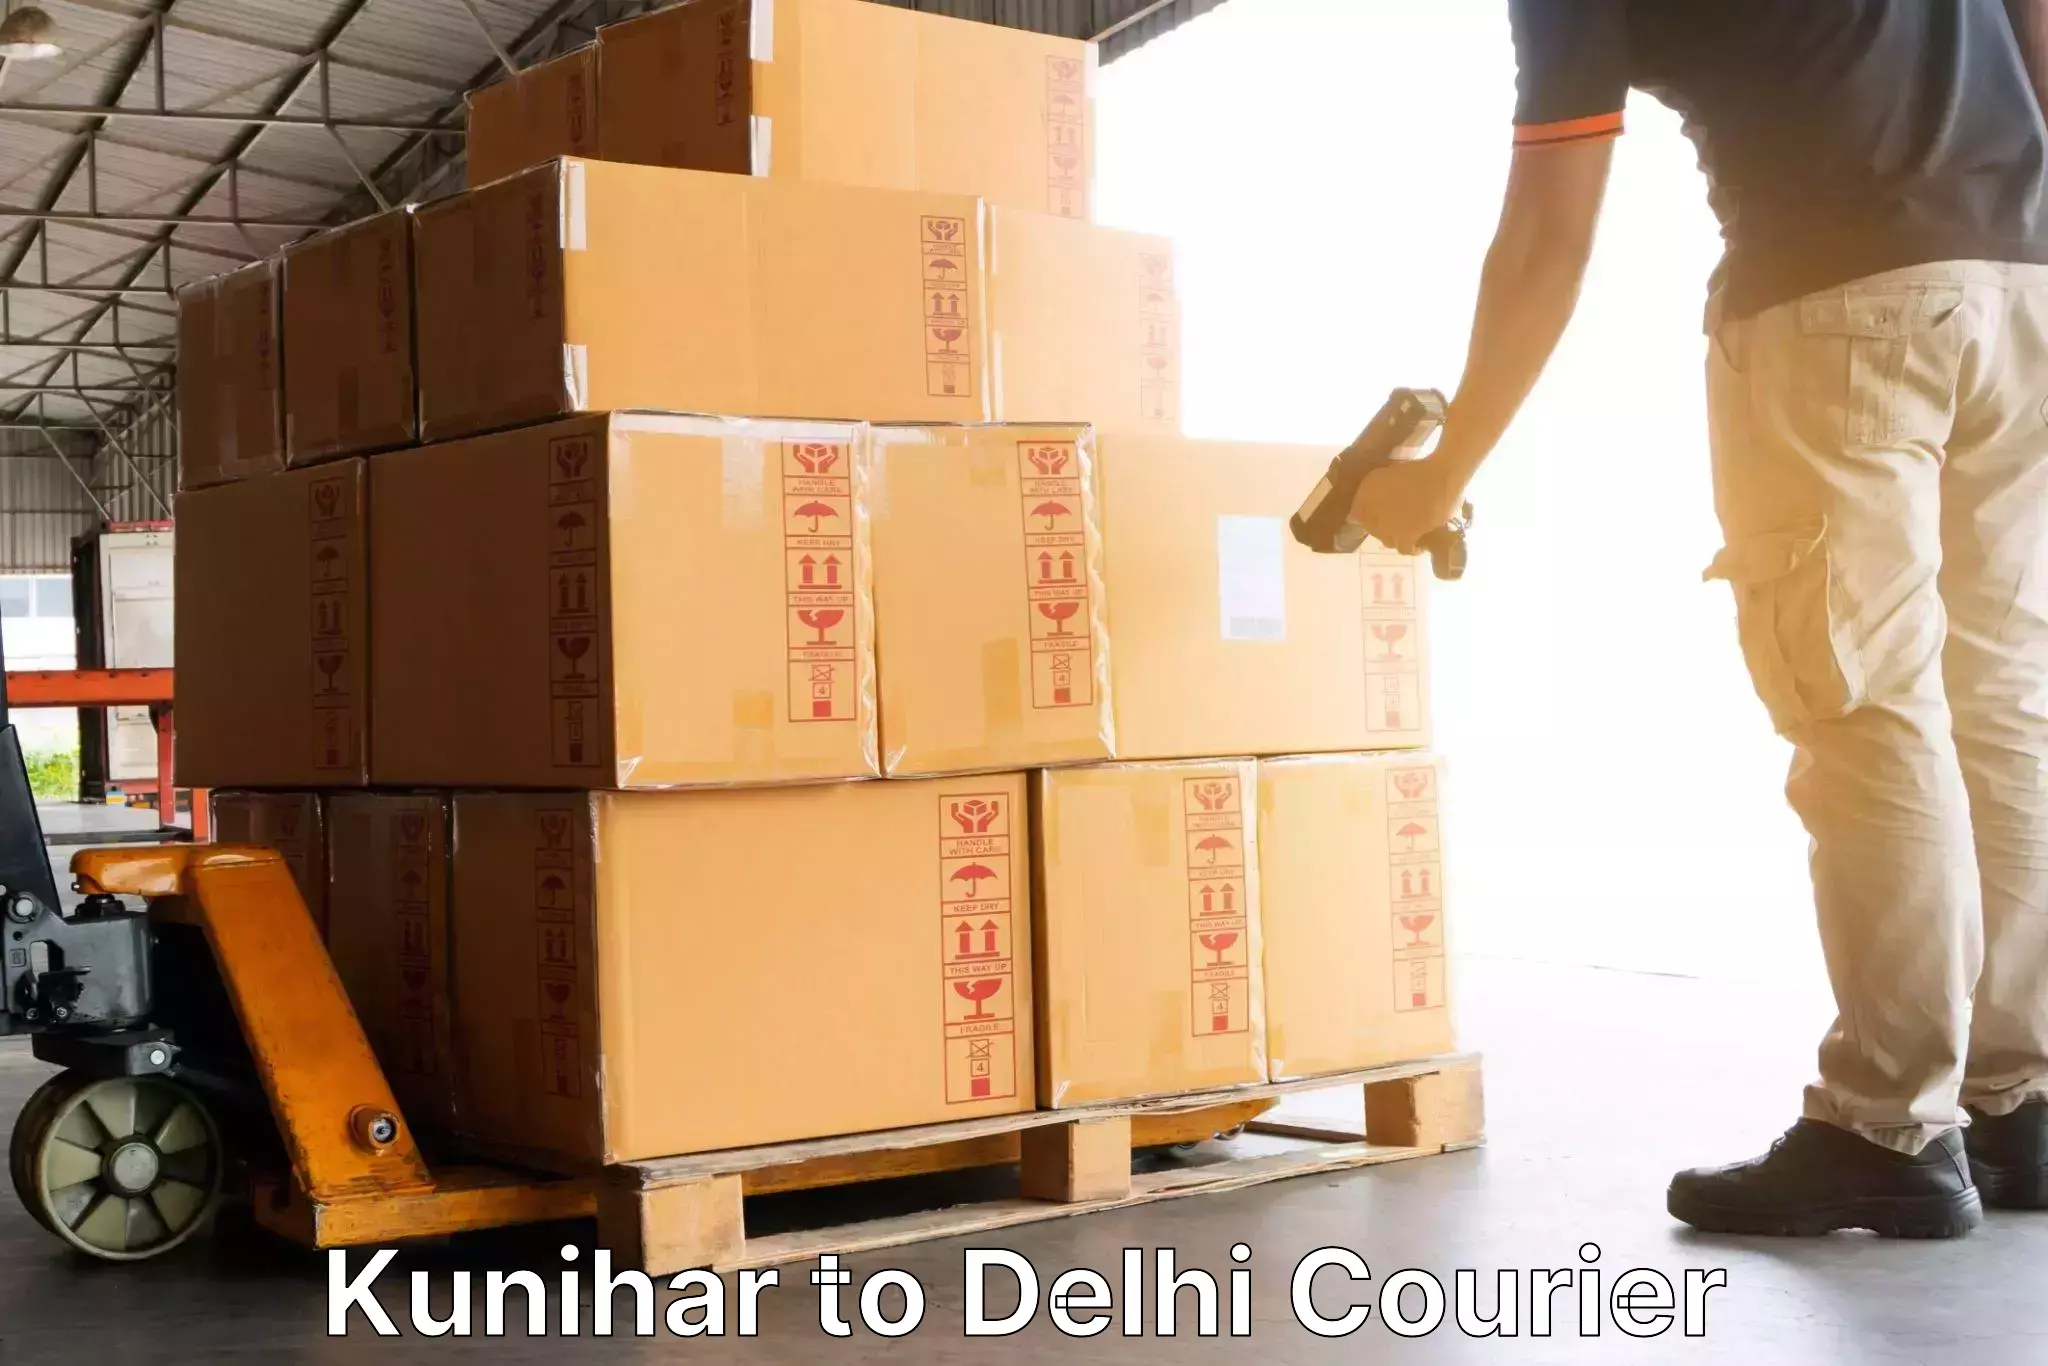 Efficient cargo services Kunihar to Delhi